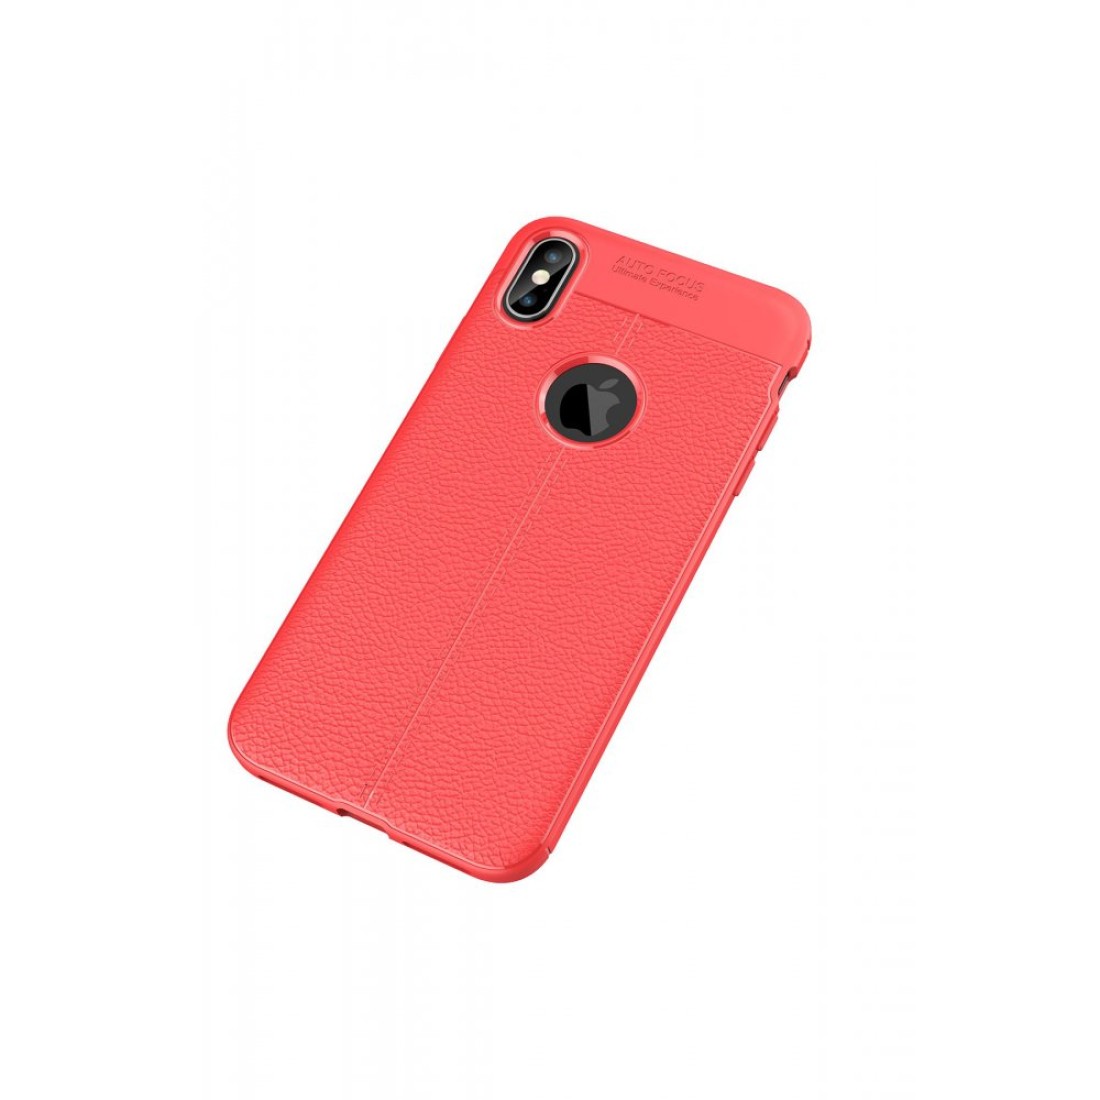 Apple iPhone XS Max Kılıf Focus Derili Silikon - Kırmızı